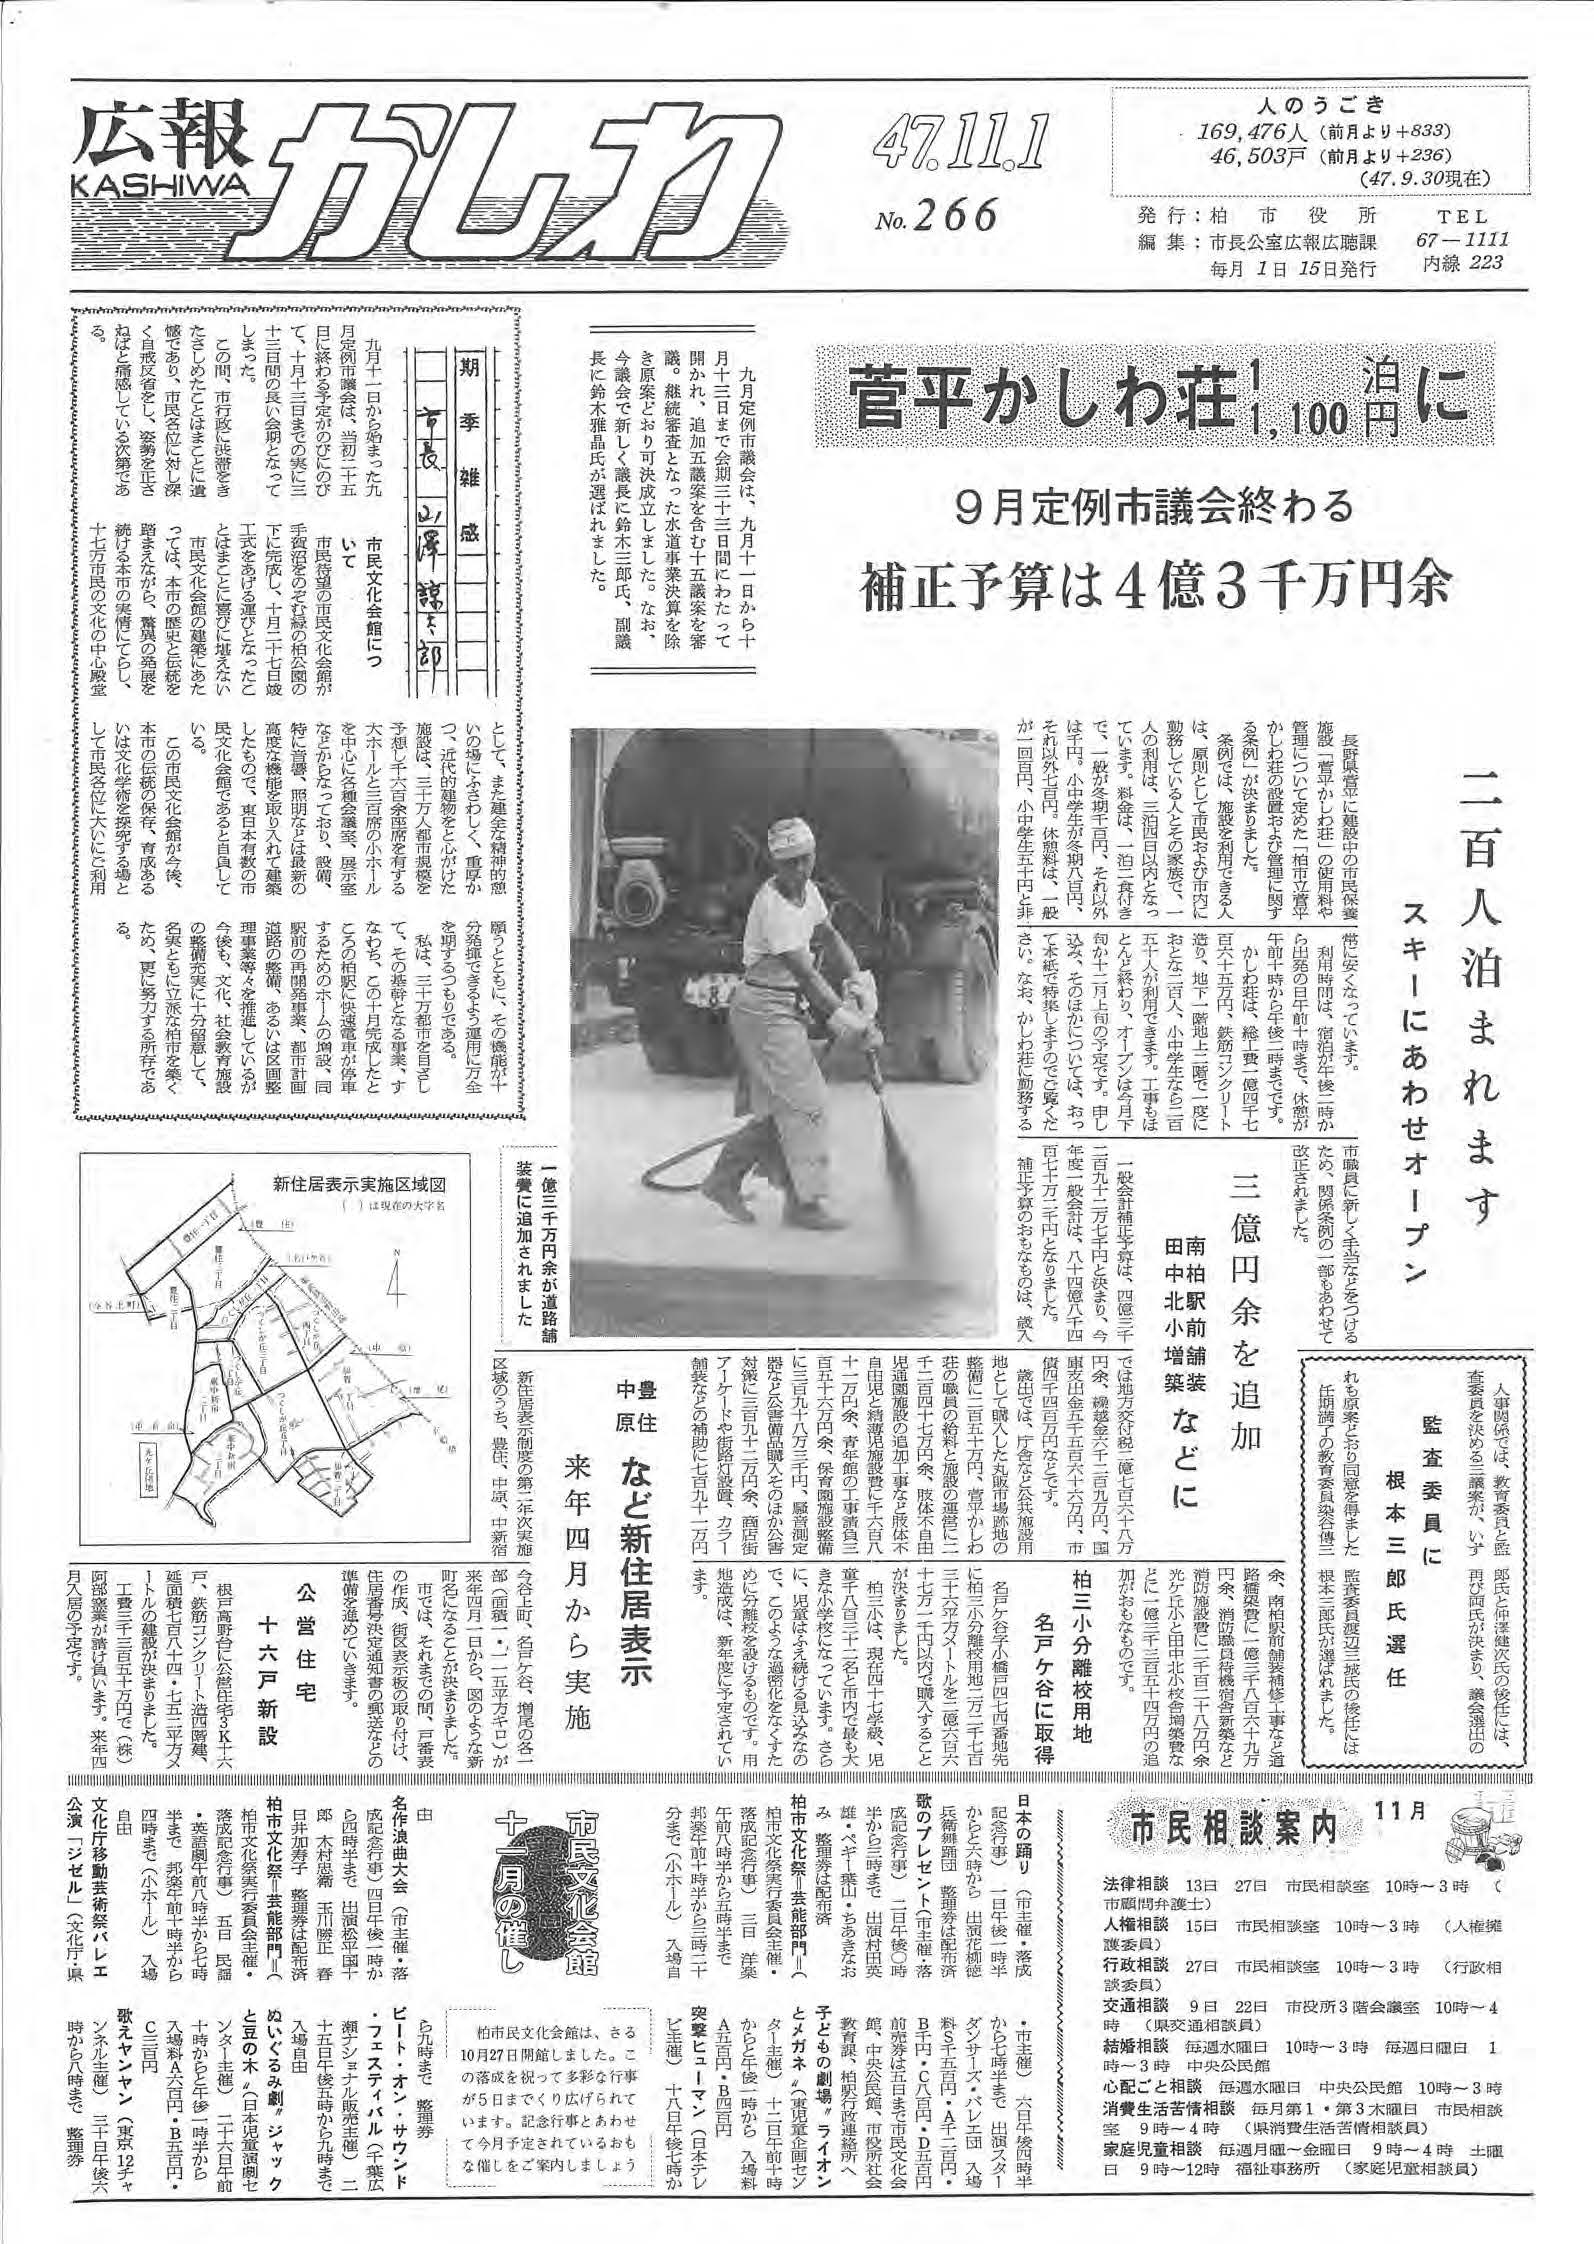 広報かしわ　昭和47年11月1日発行　266号